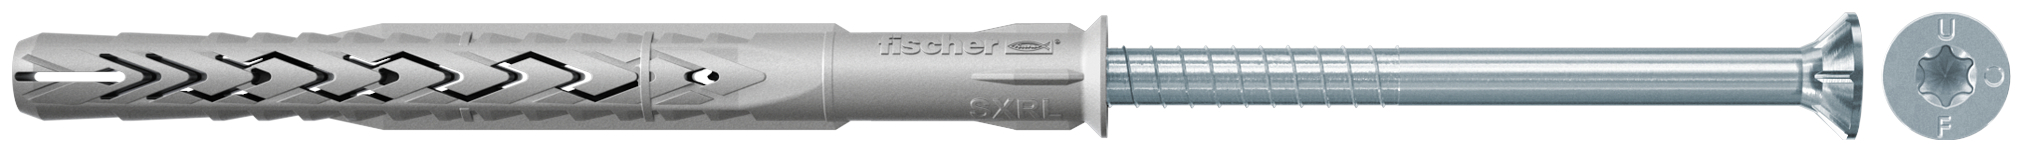 fischer Tasselli prolungati SXRL 8x140 T (1 Pz.) Tassello prolungato in nylon con marcatura CE con vite premontata T.S.P. impronta torx fie3161